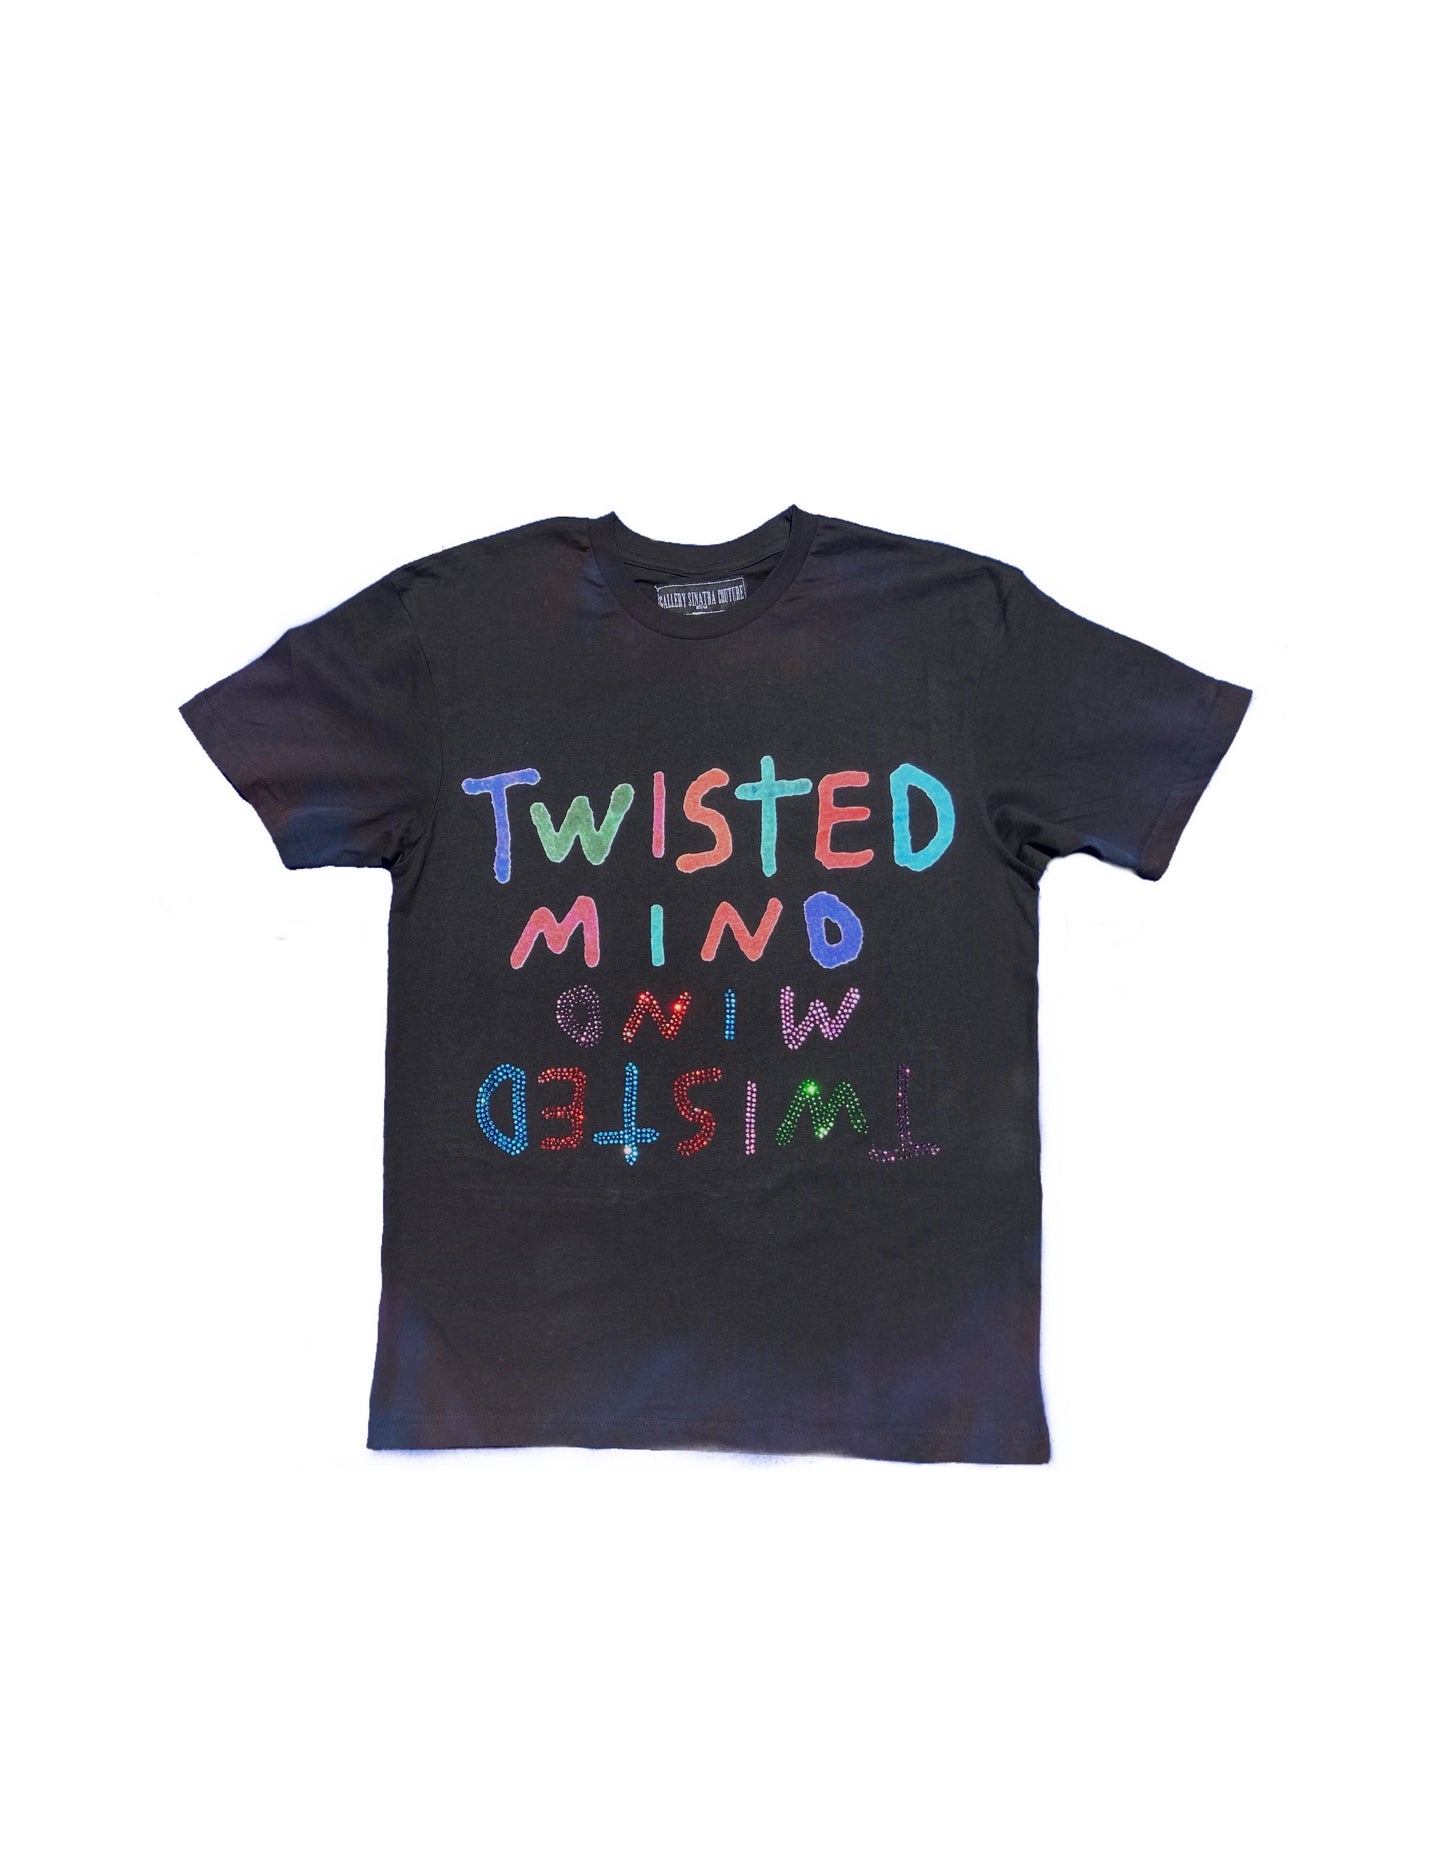 Twisted Mind “Strange” T-shirt